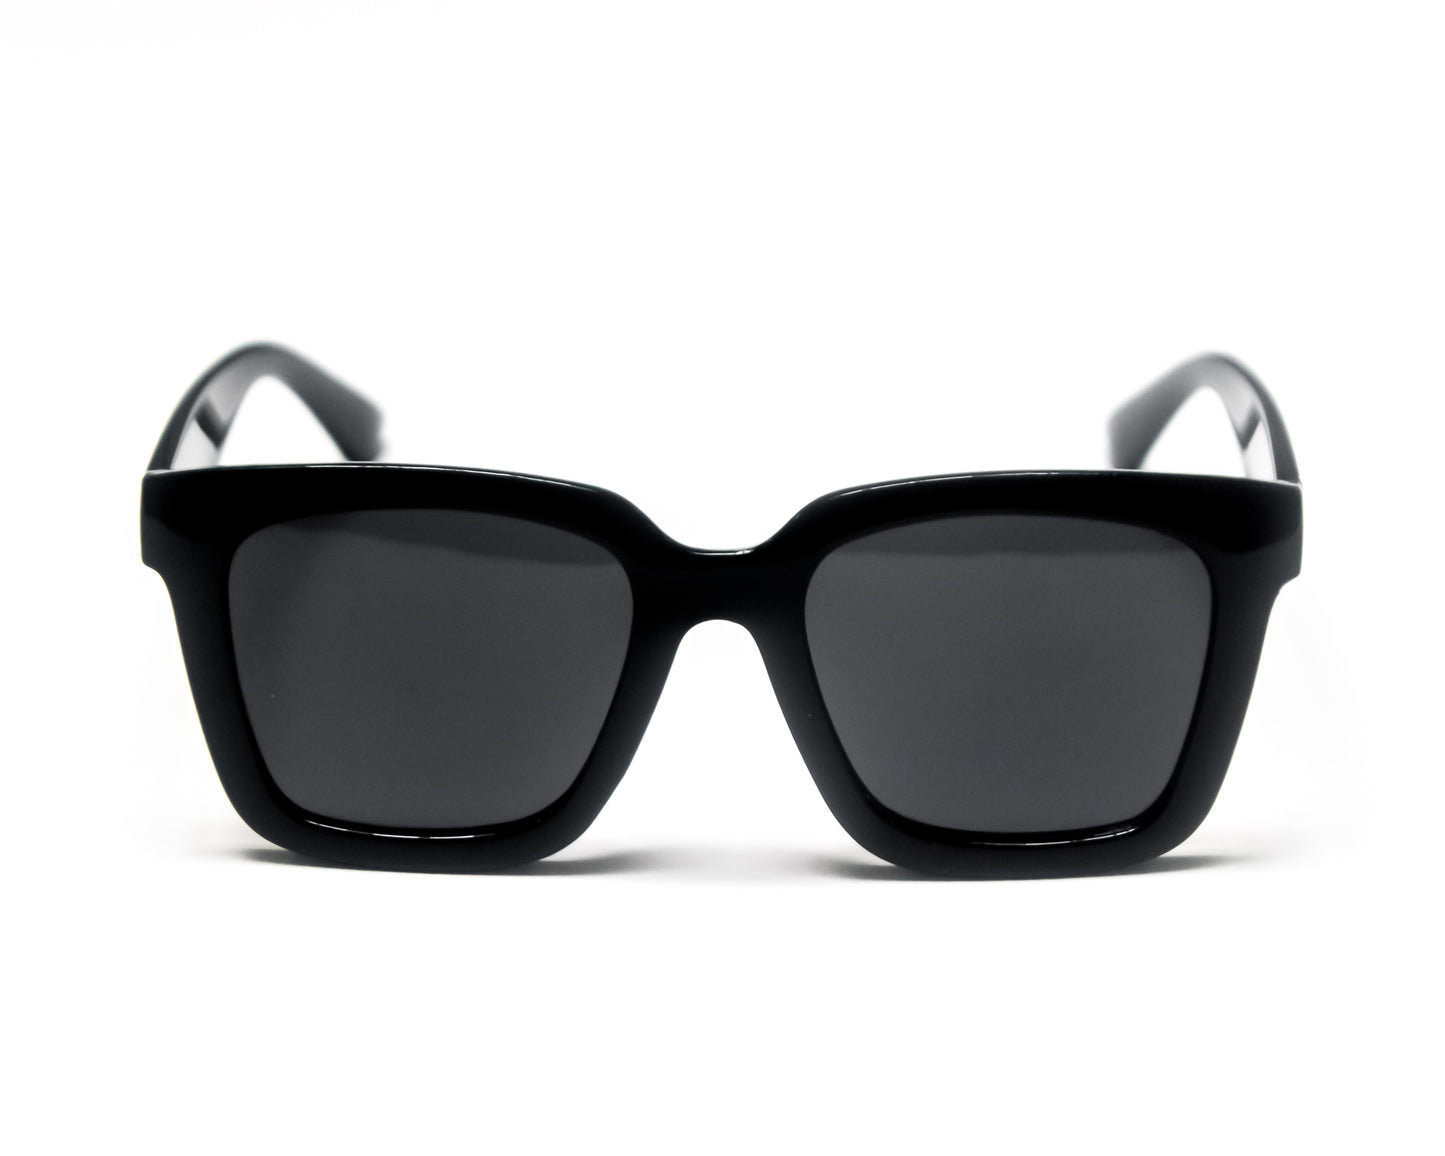 Cool Guy D-Frame Sunglasses